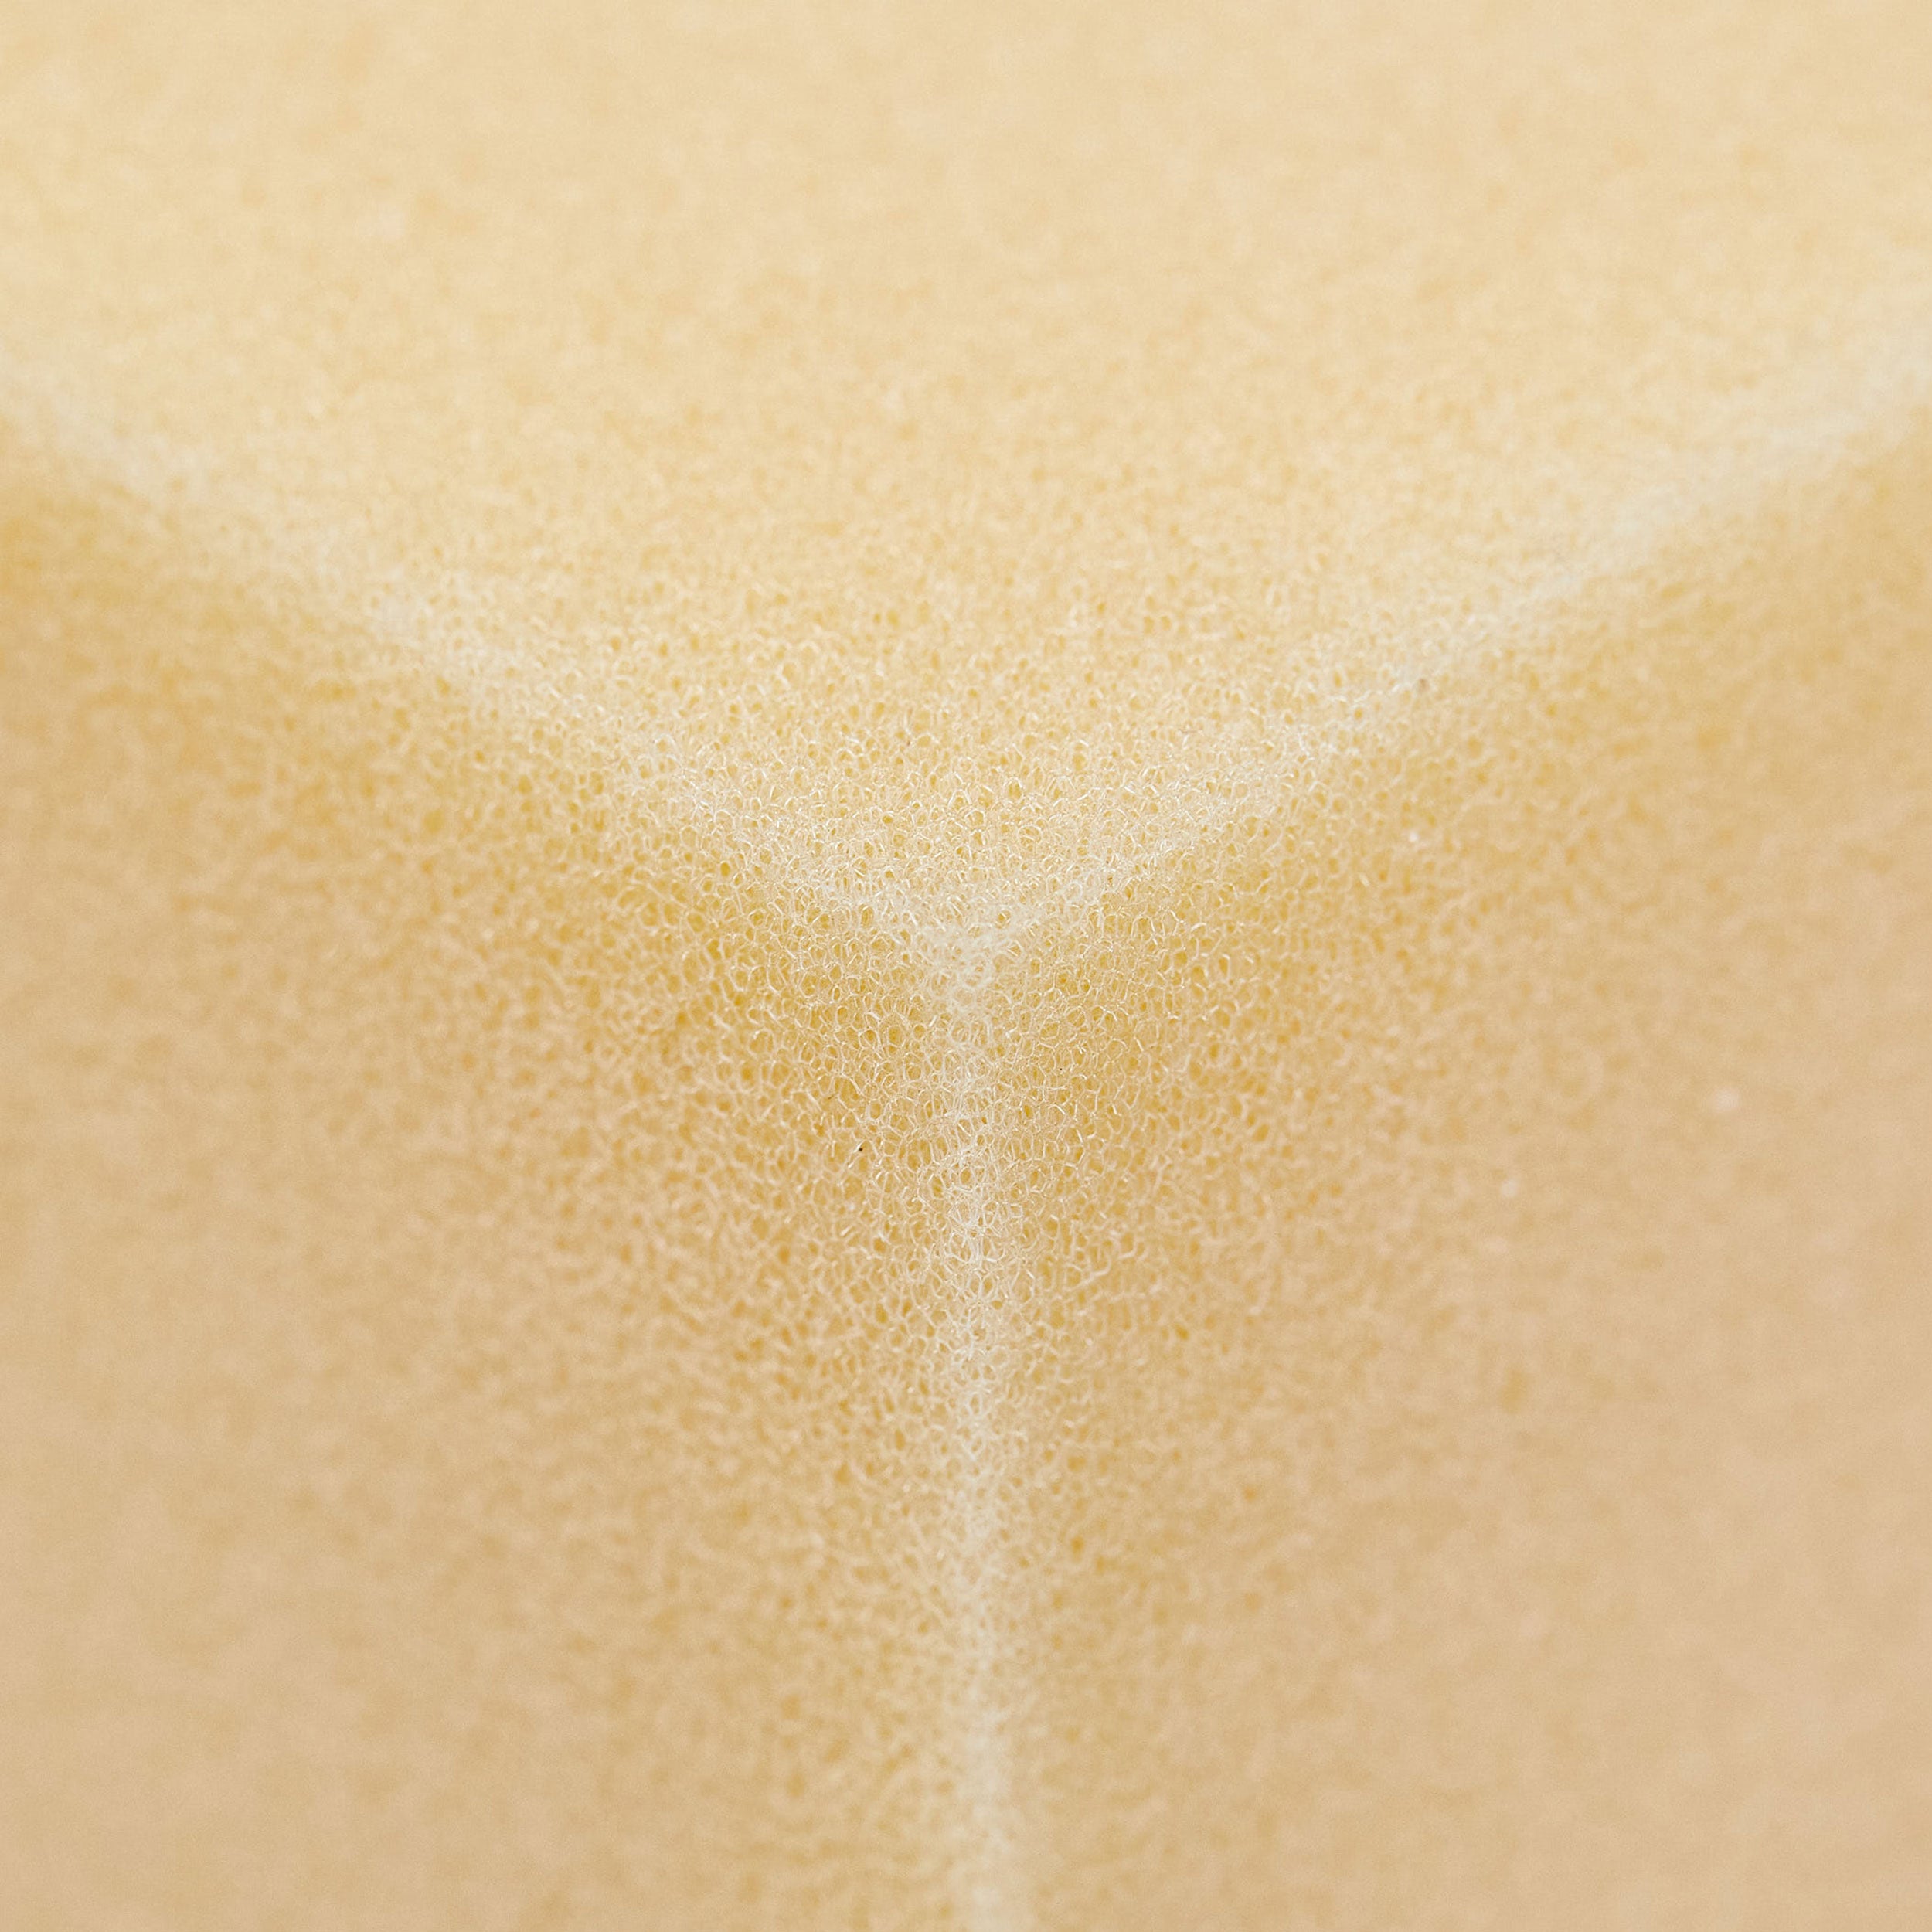 close up of foam